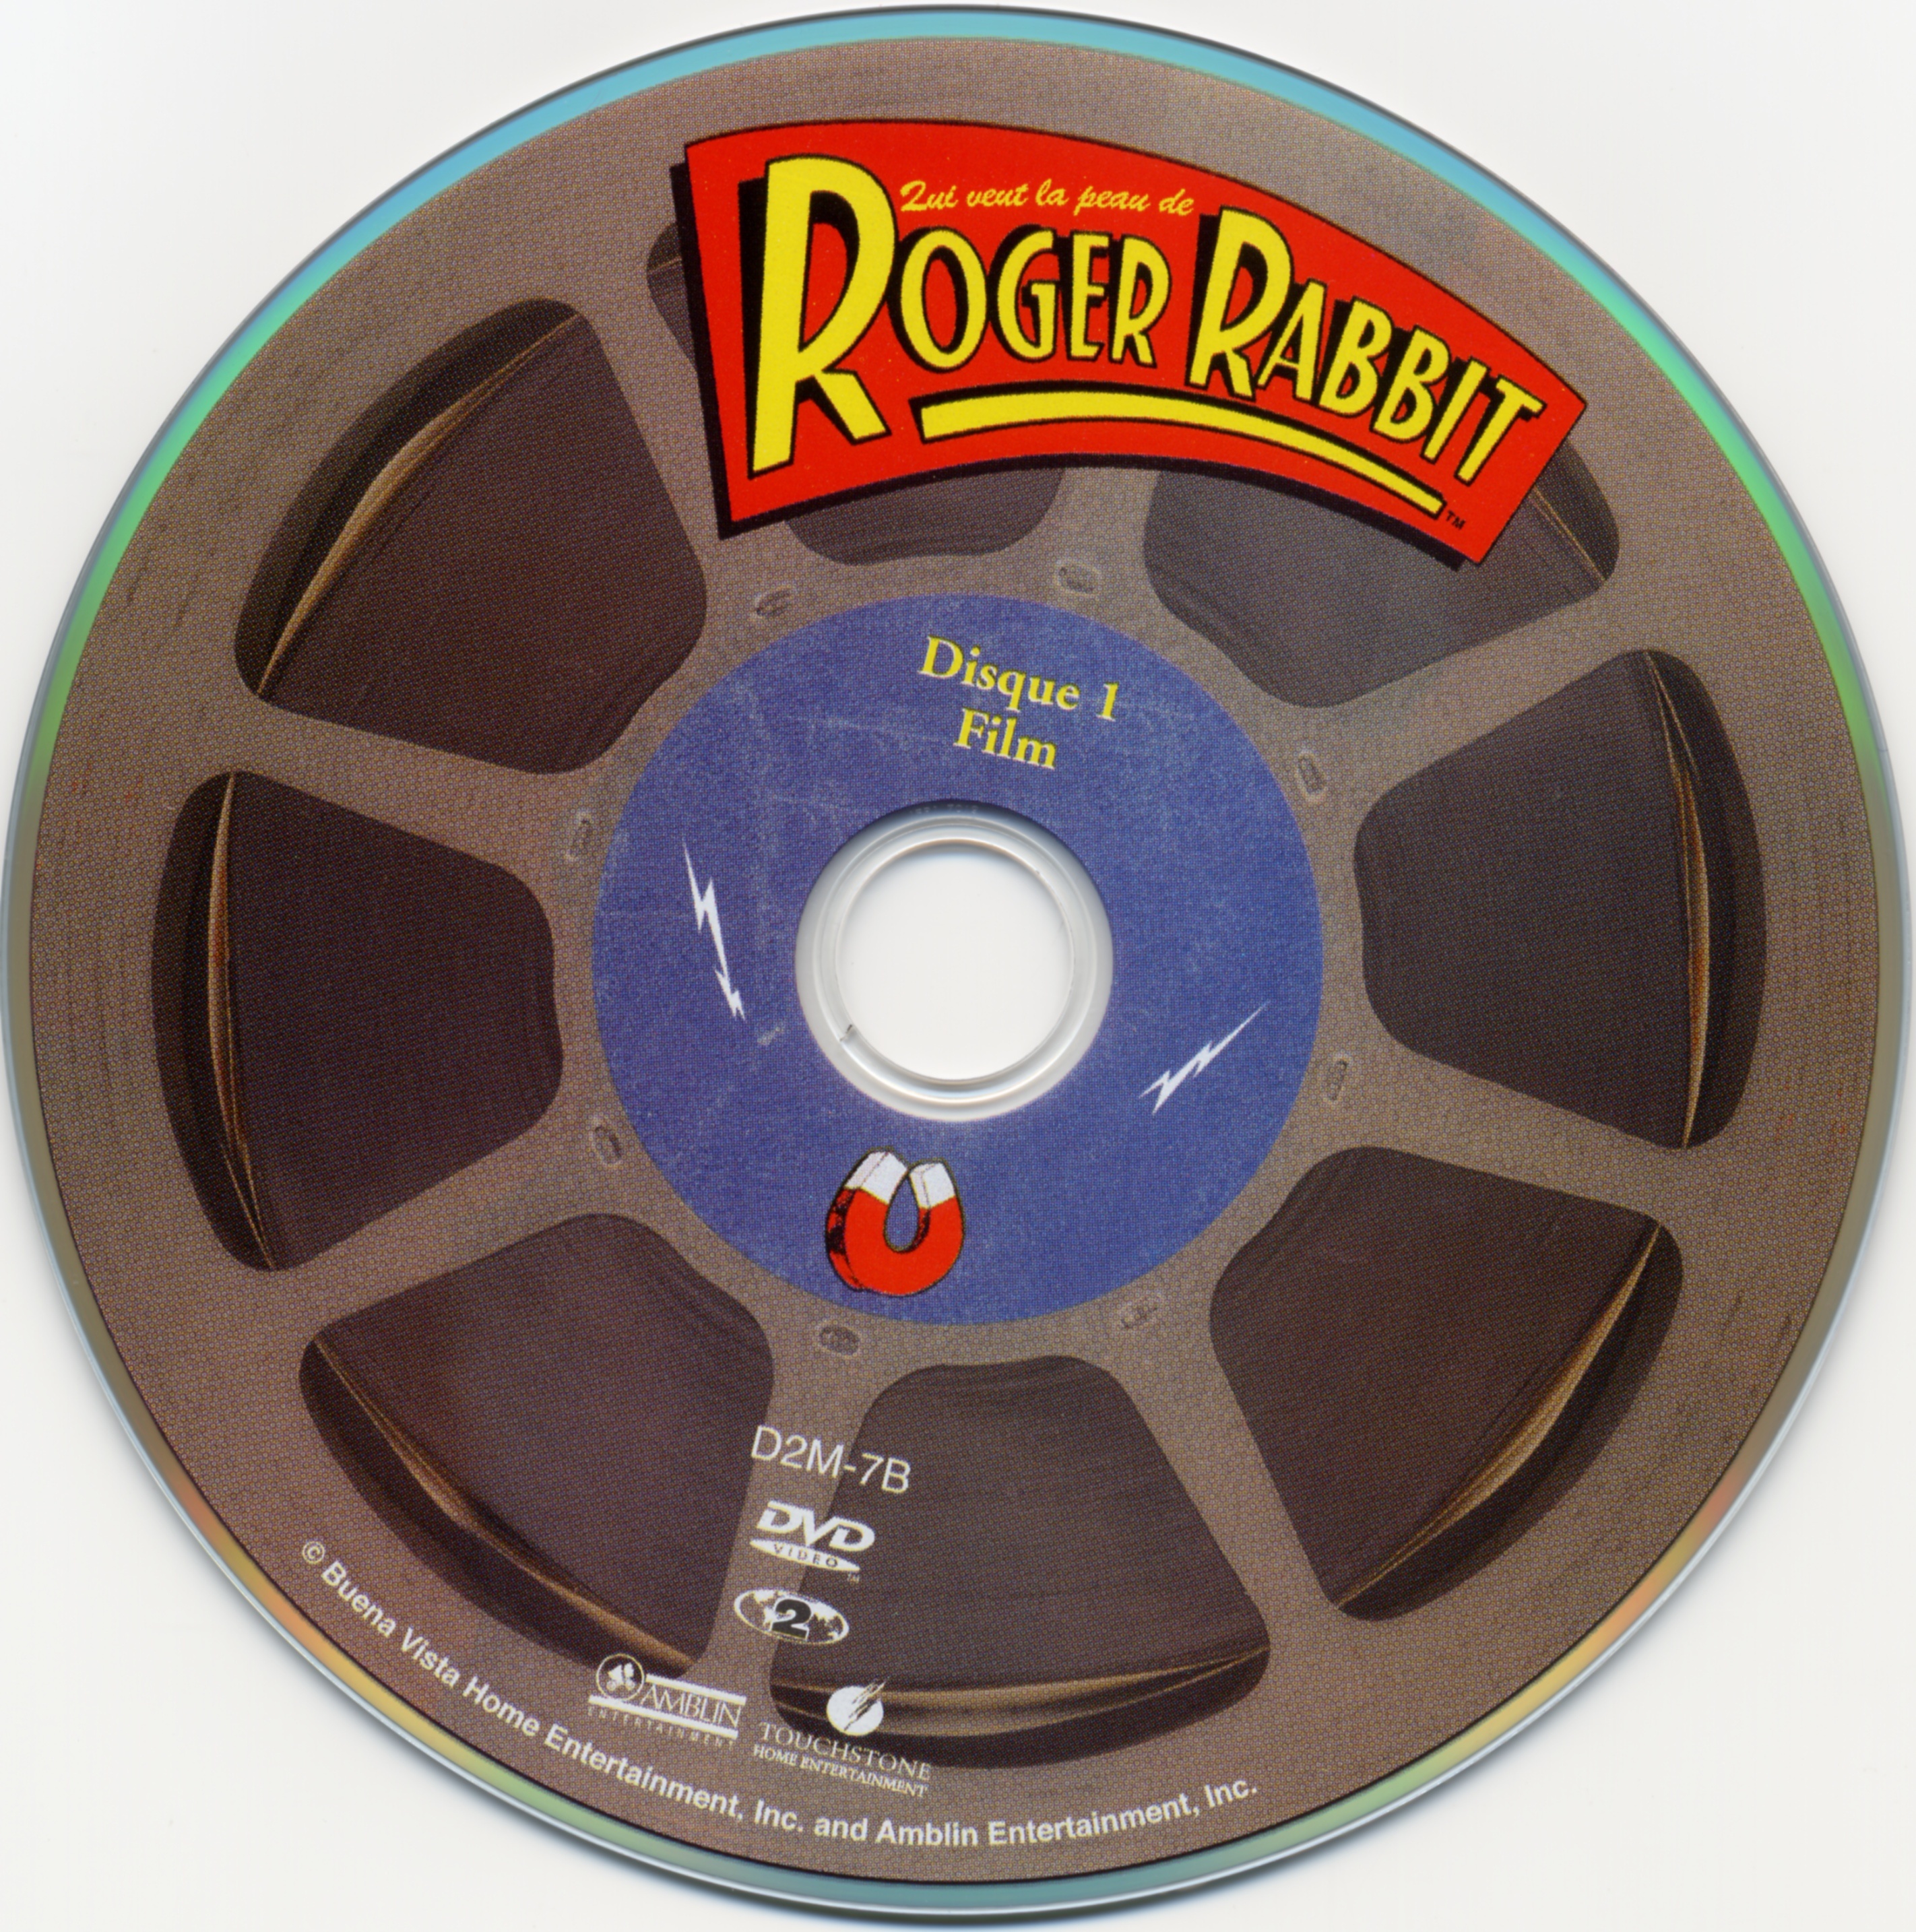 Qui veut la peau de Roger Rabbit DISC 1